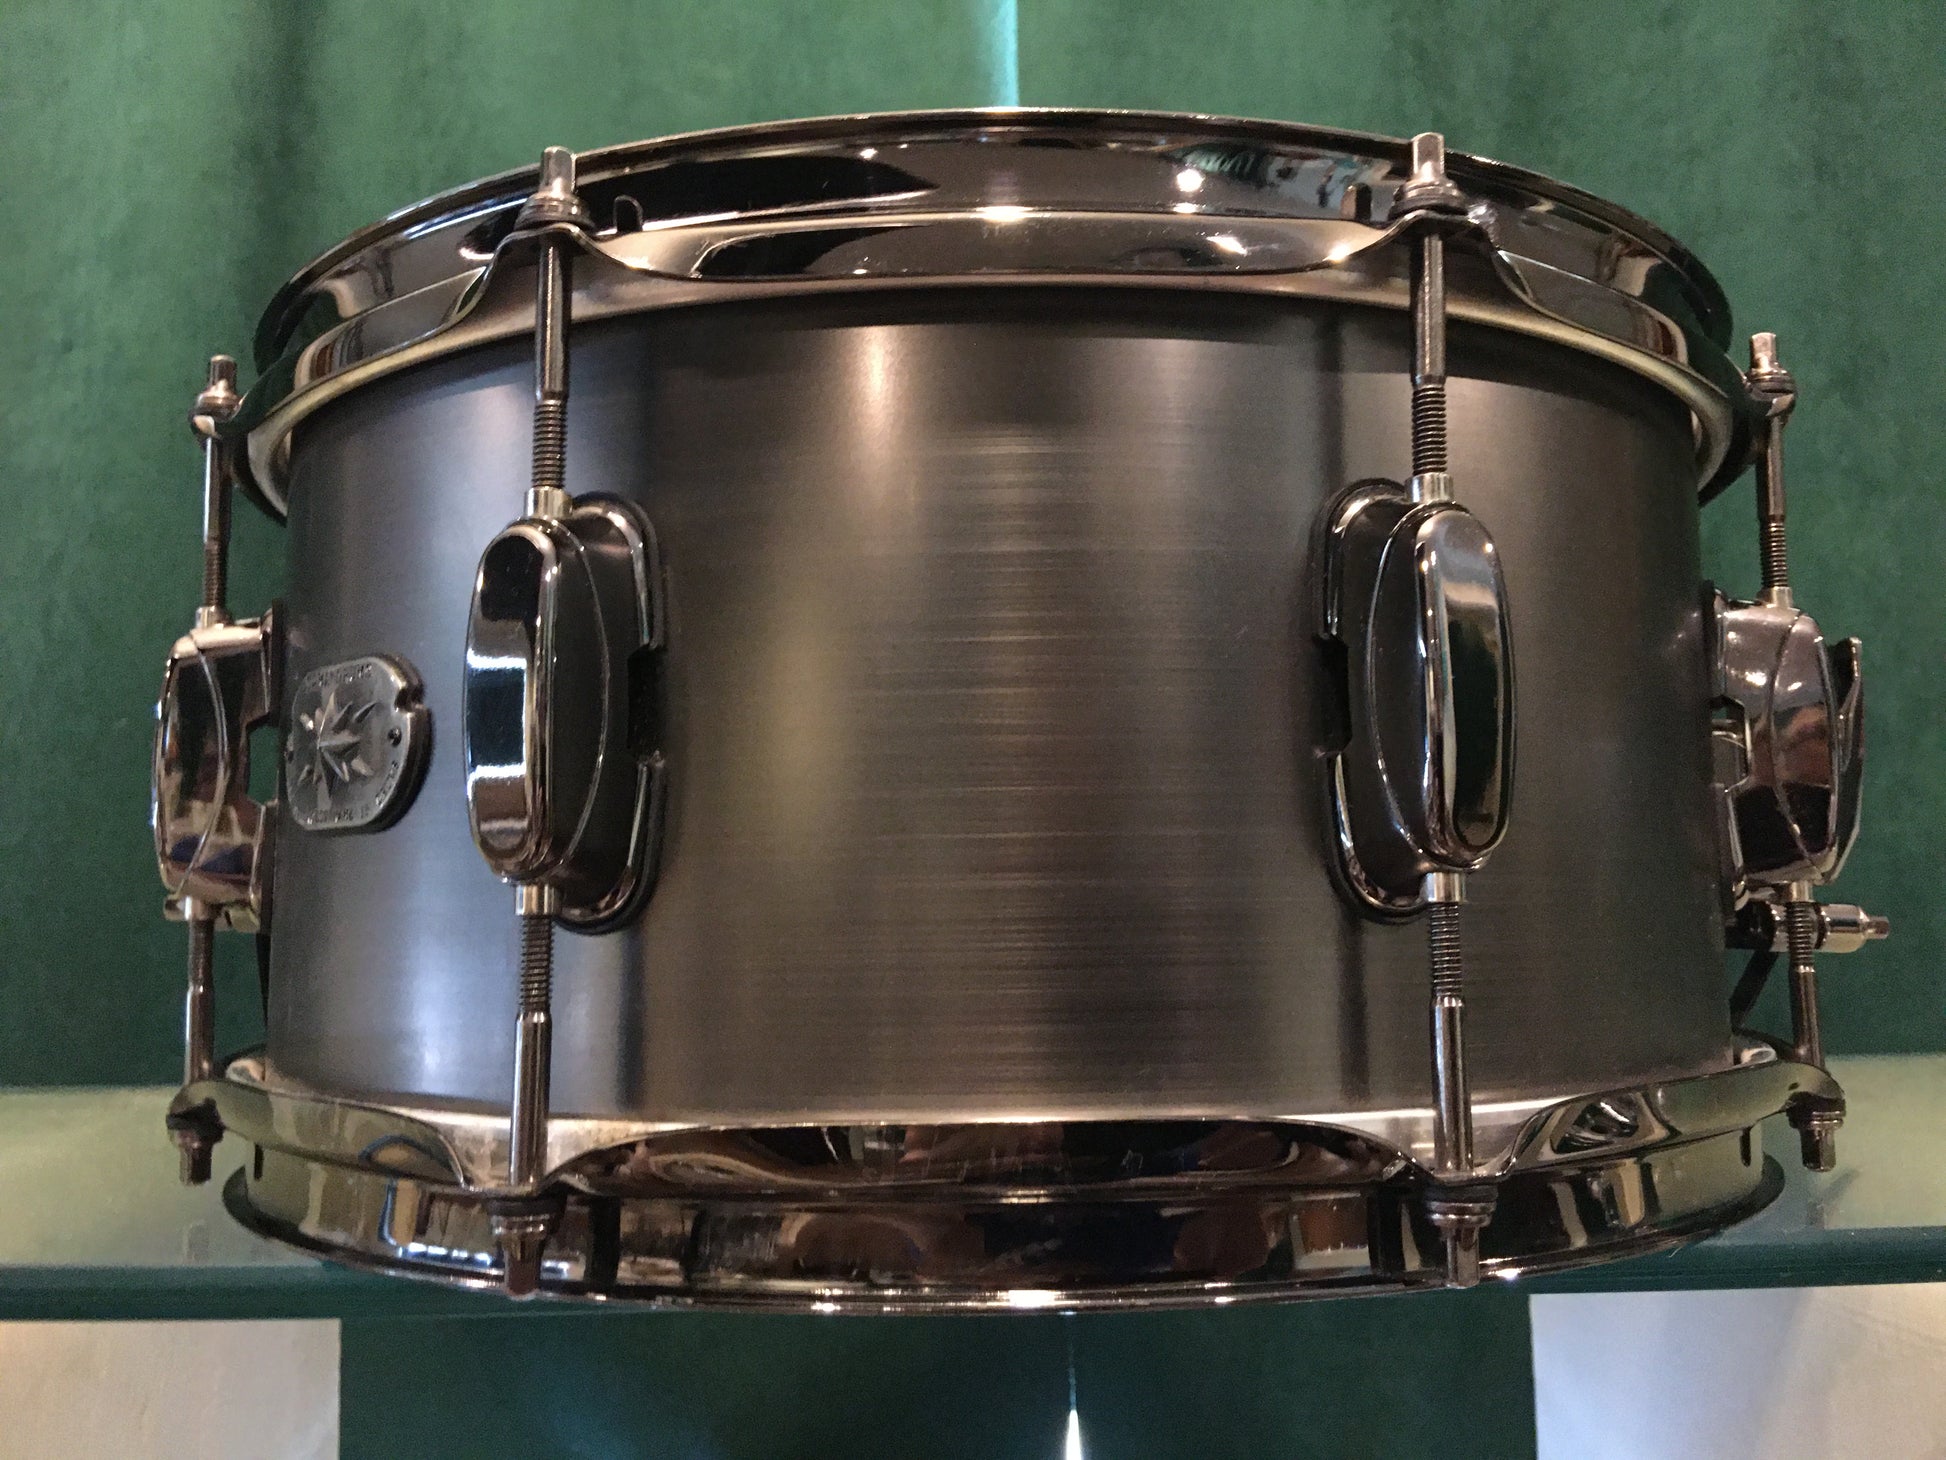 Snare Drum Aluminum 13